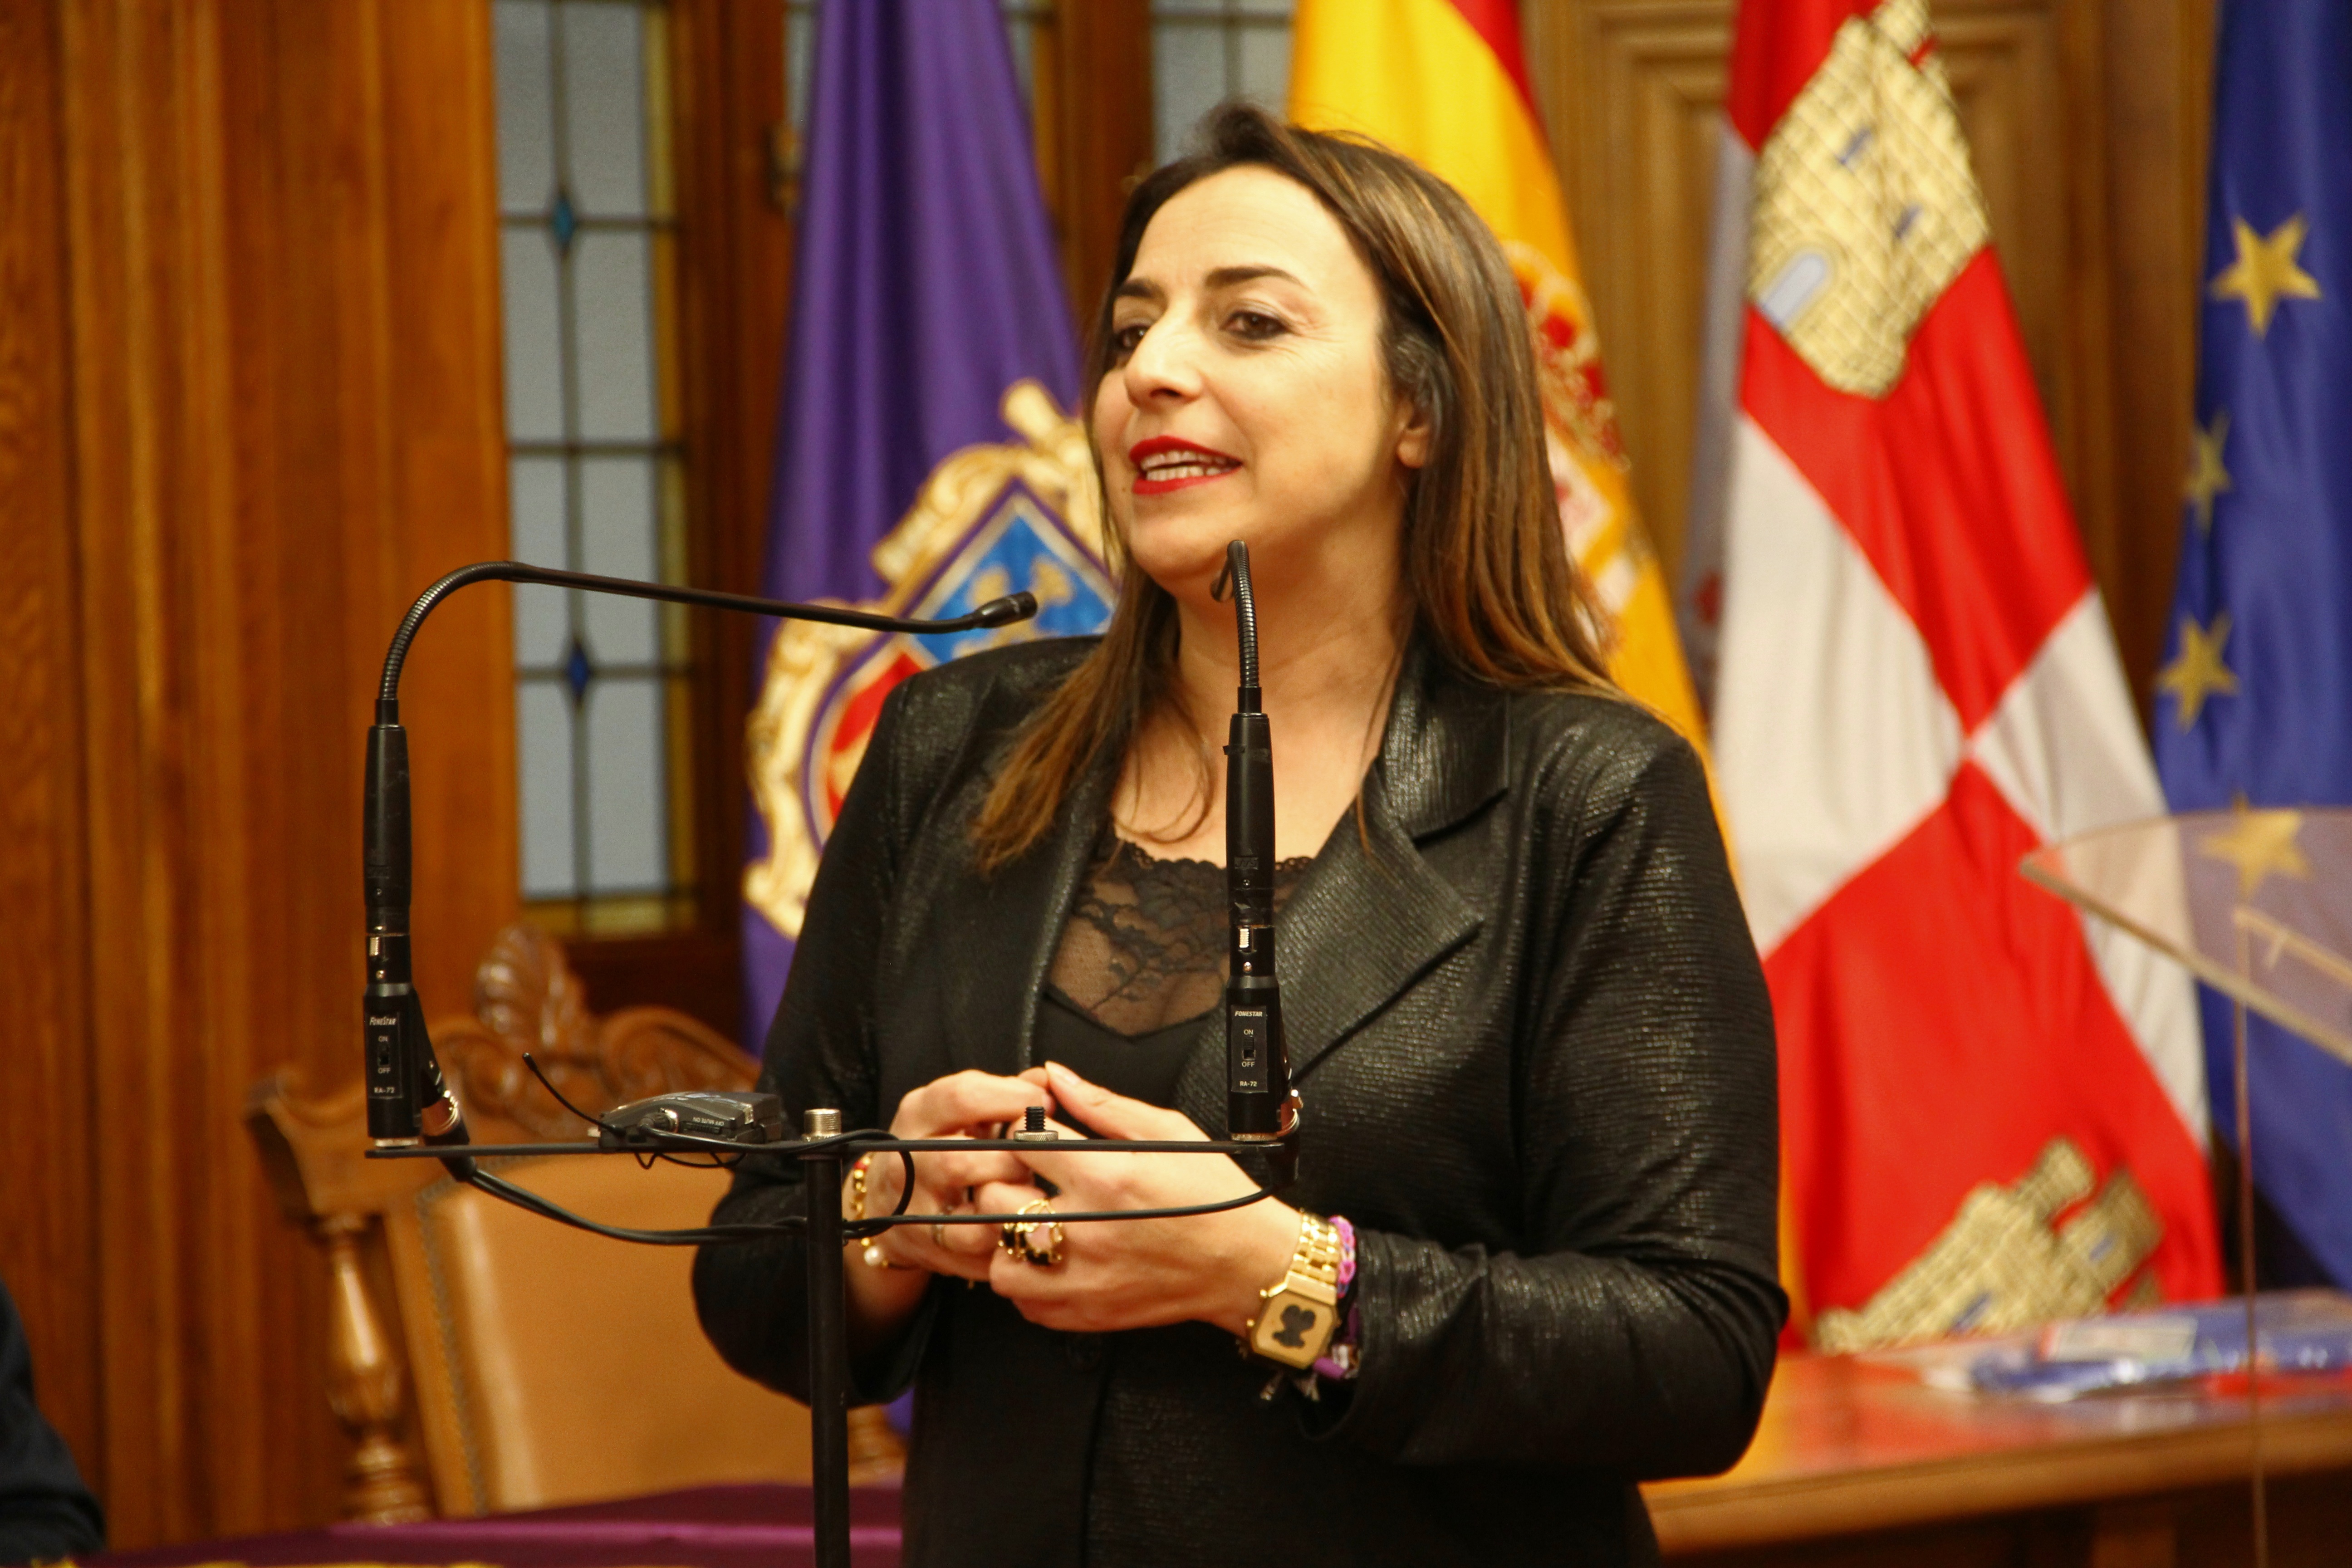  La alcaldesa de la ciudad, Miriam Andrés, confía en que antes de que finalice el plazo de un mes que Adif tiene para contestar se pueda llegar a una solución.